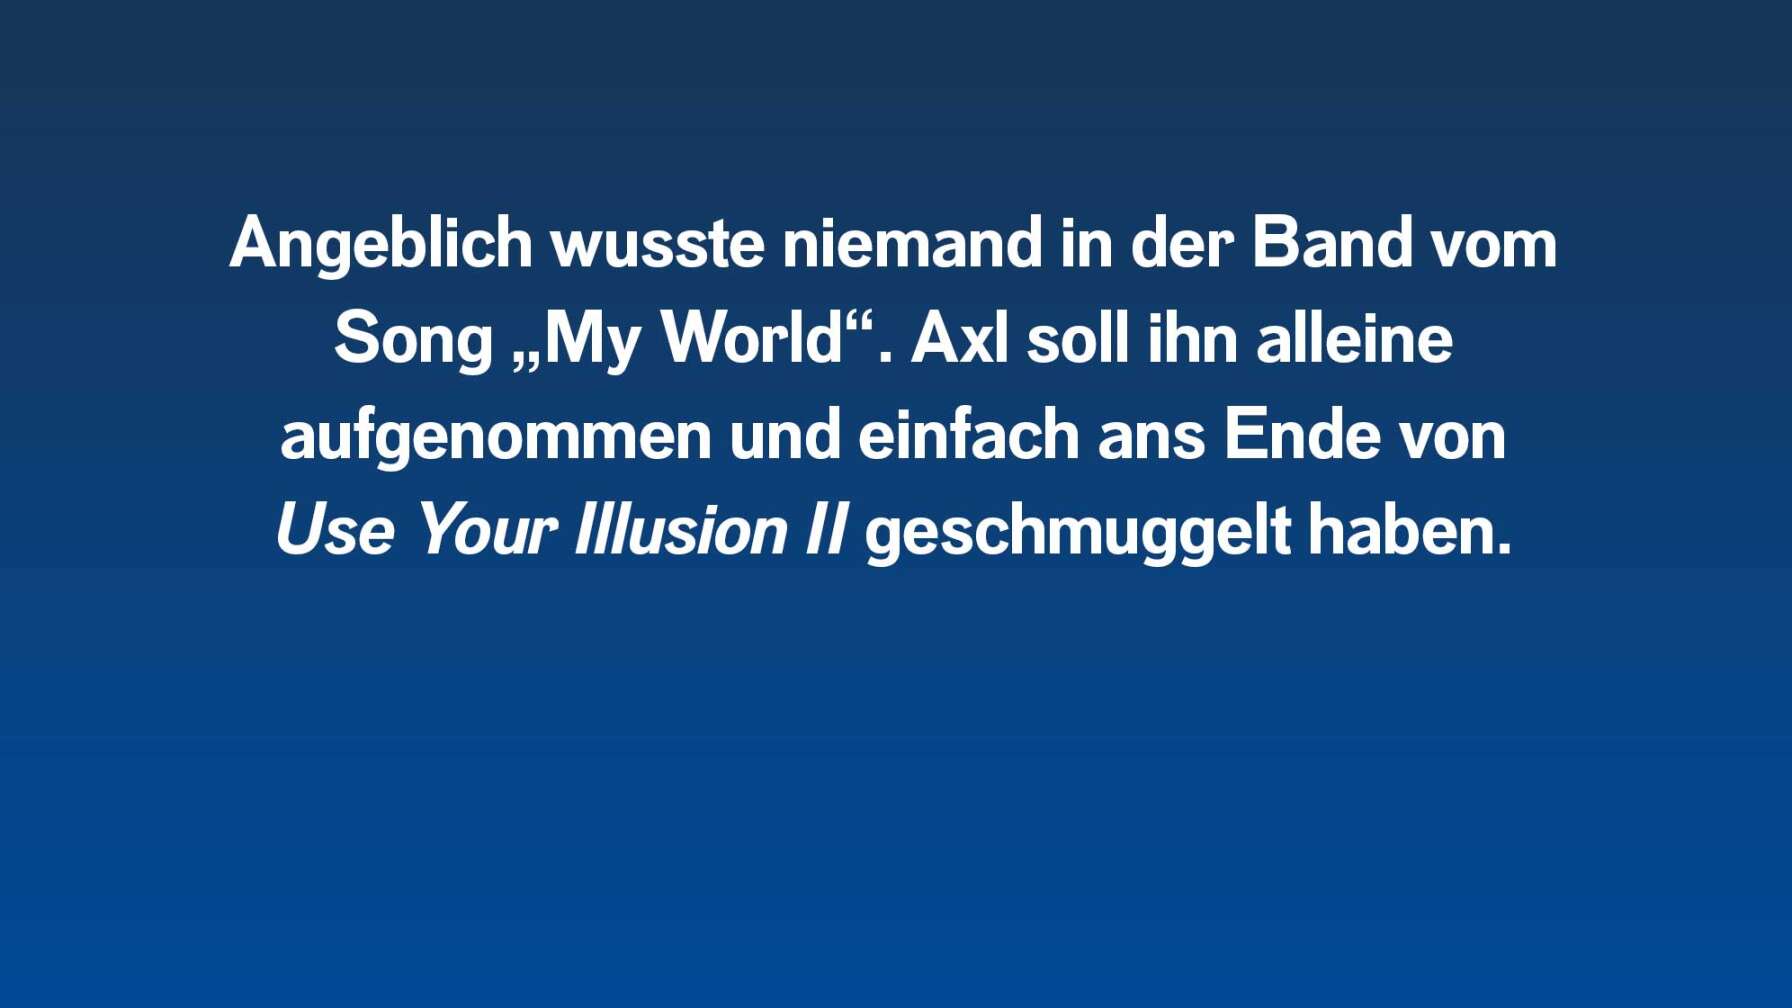 Angeblich wusste niemand in der Band vom Song "My World". Axl Rose soll ihn aufs Album geschmuggelt haben.